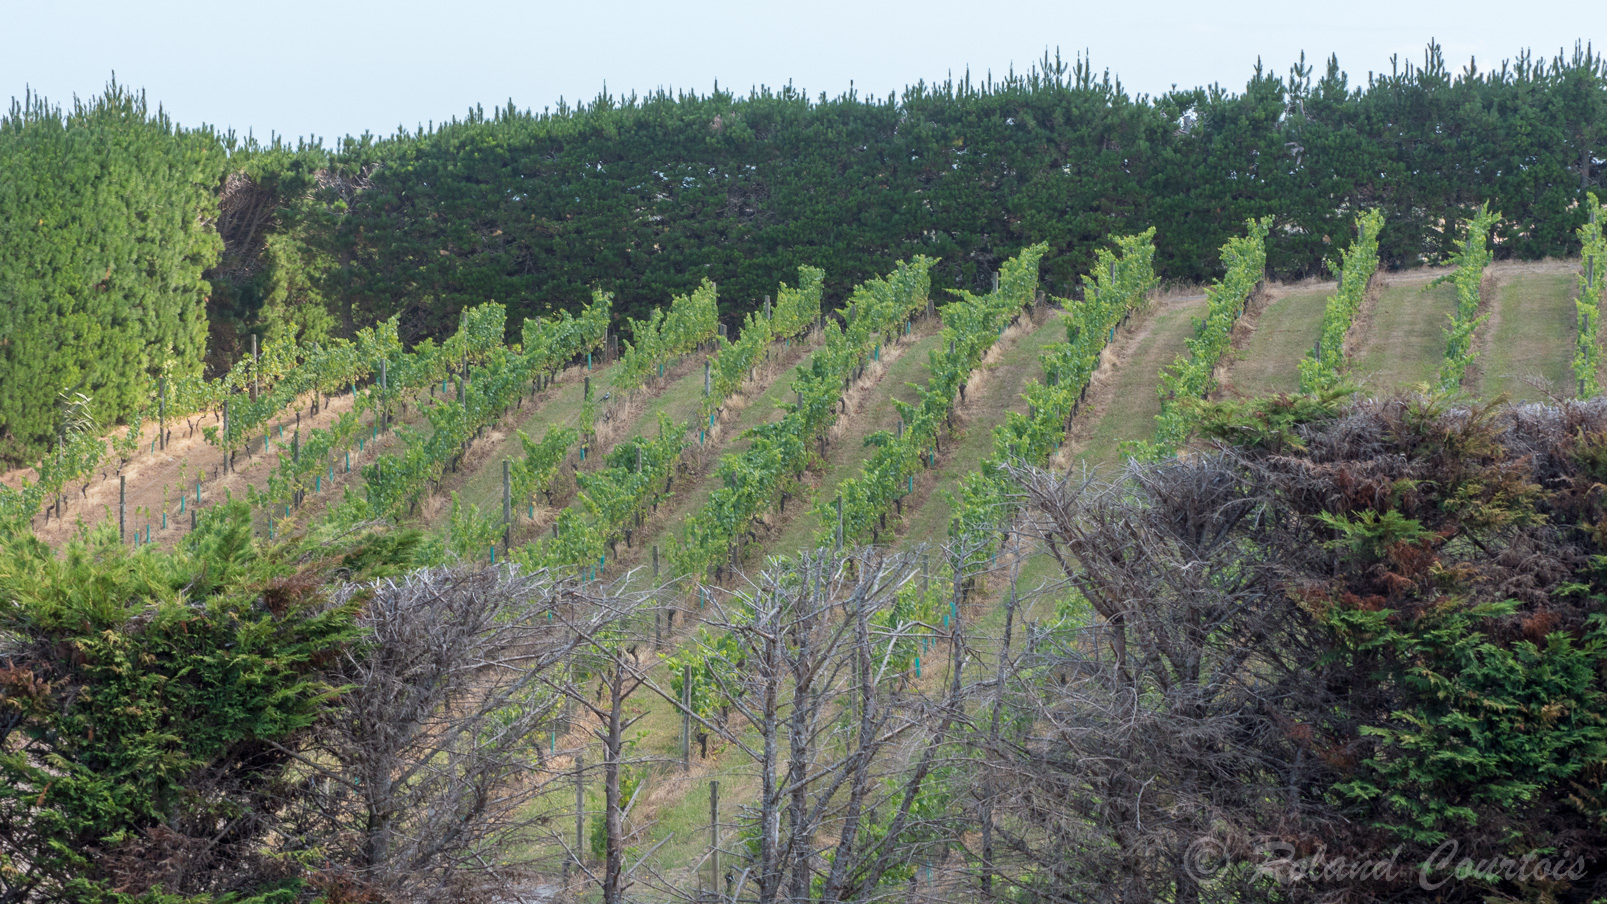 C'est l'île du vin avec de nombreux vignobles réputés comme le vignoble Mudbrick